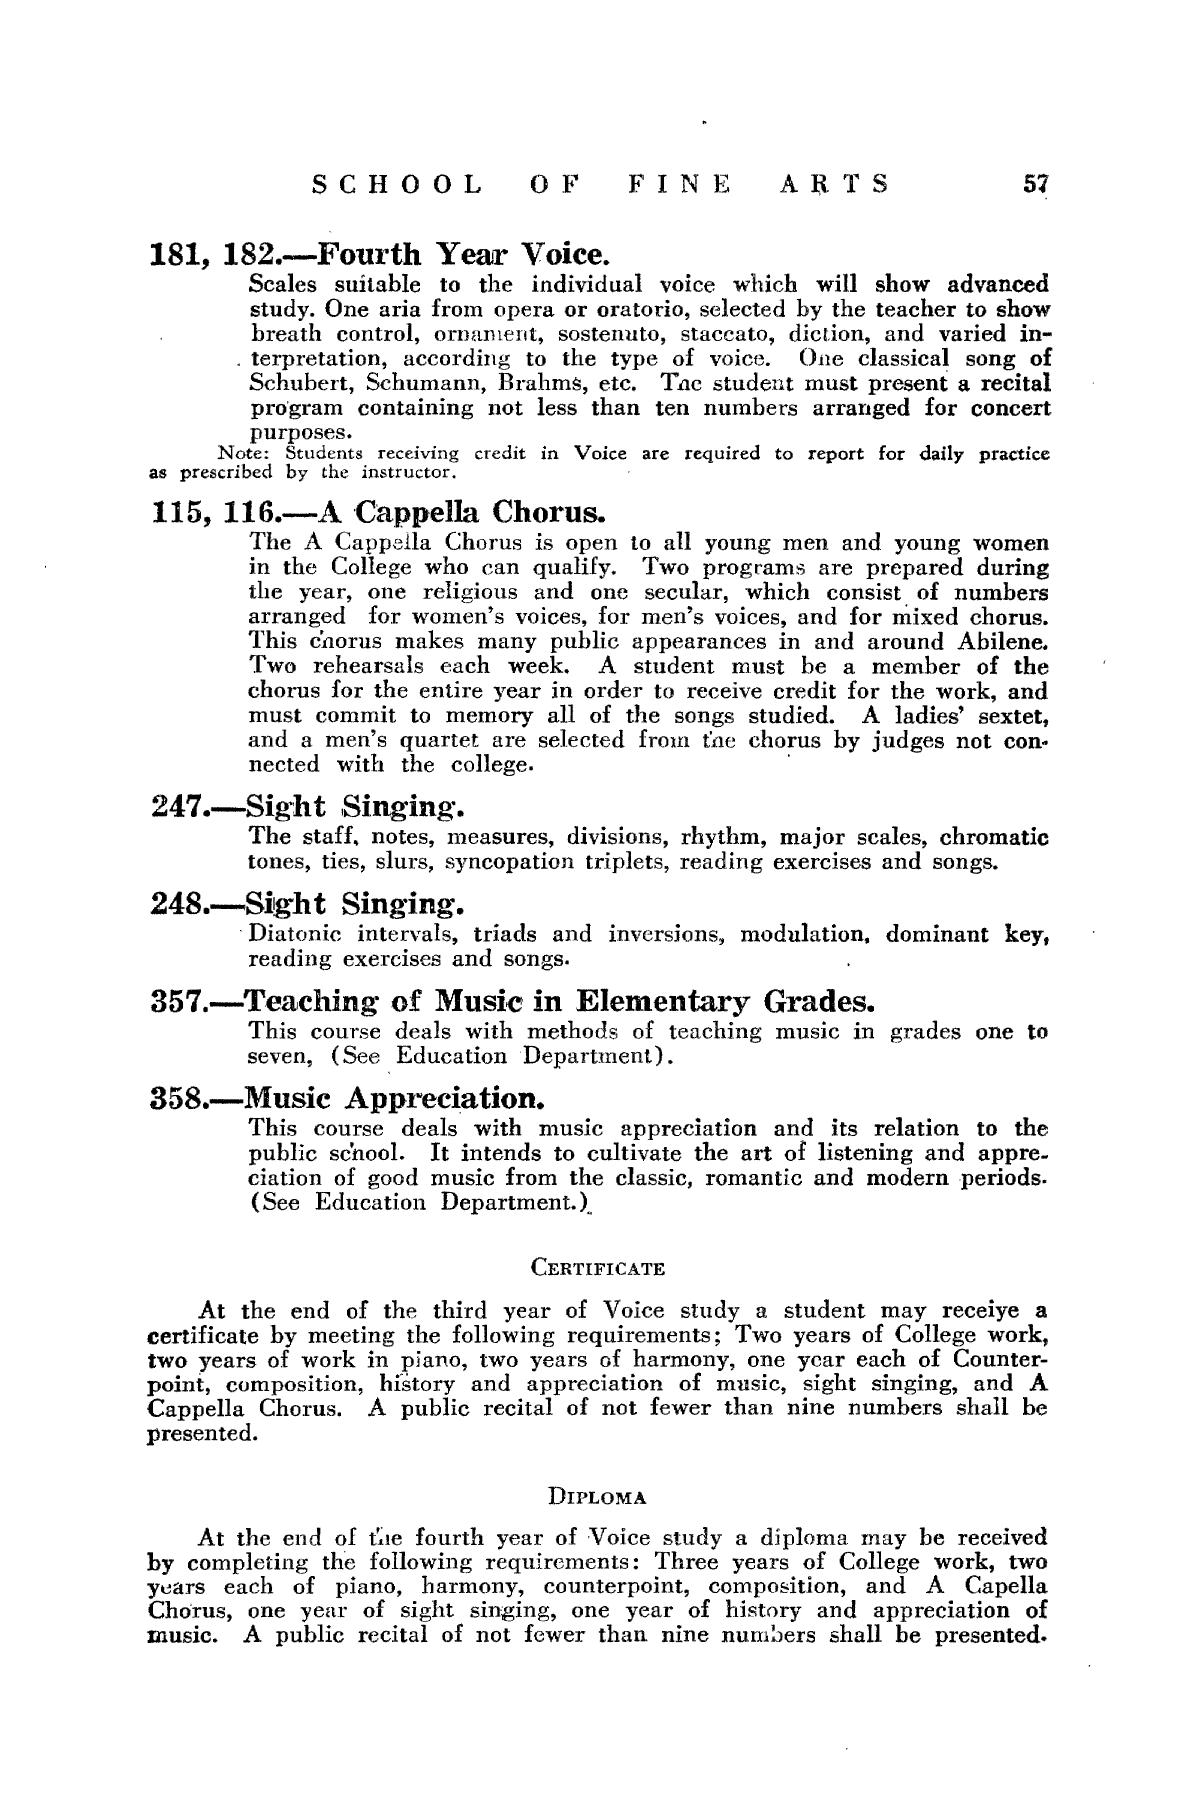 Catalog of Abilene Christian College, 1934-1935
                                                
                                                    57
                                                